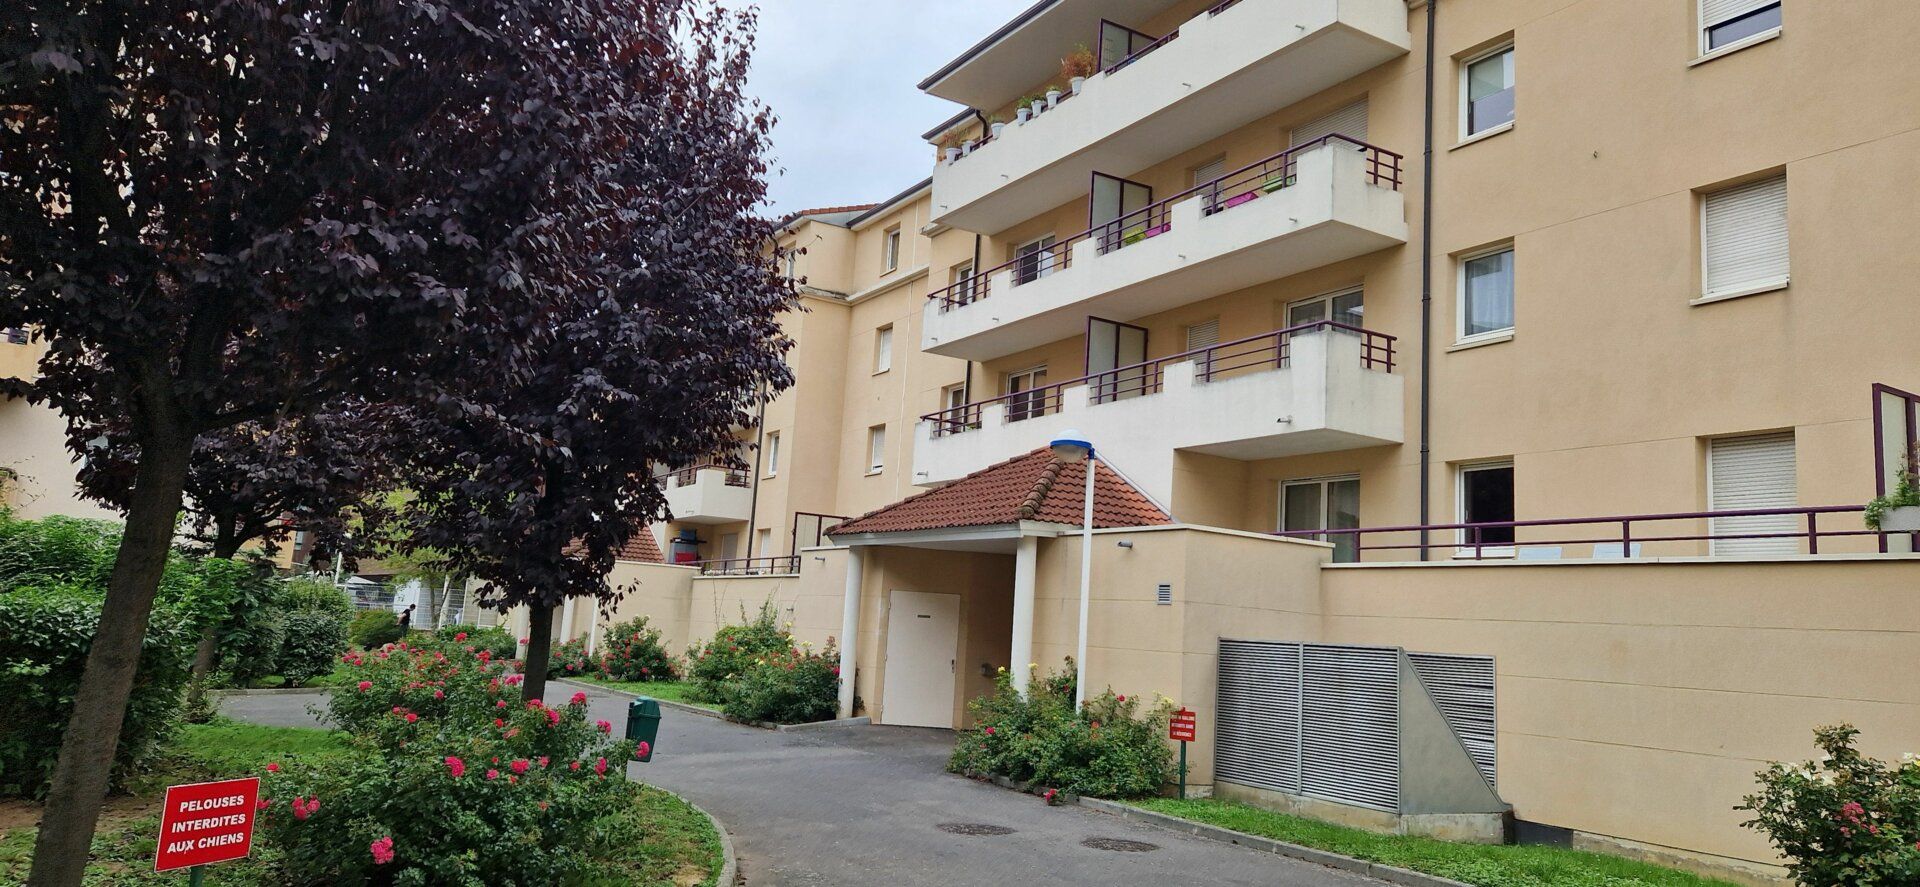 Appartement à vendre 2 55m2 à Rouen vignette-1